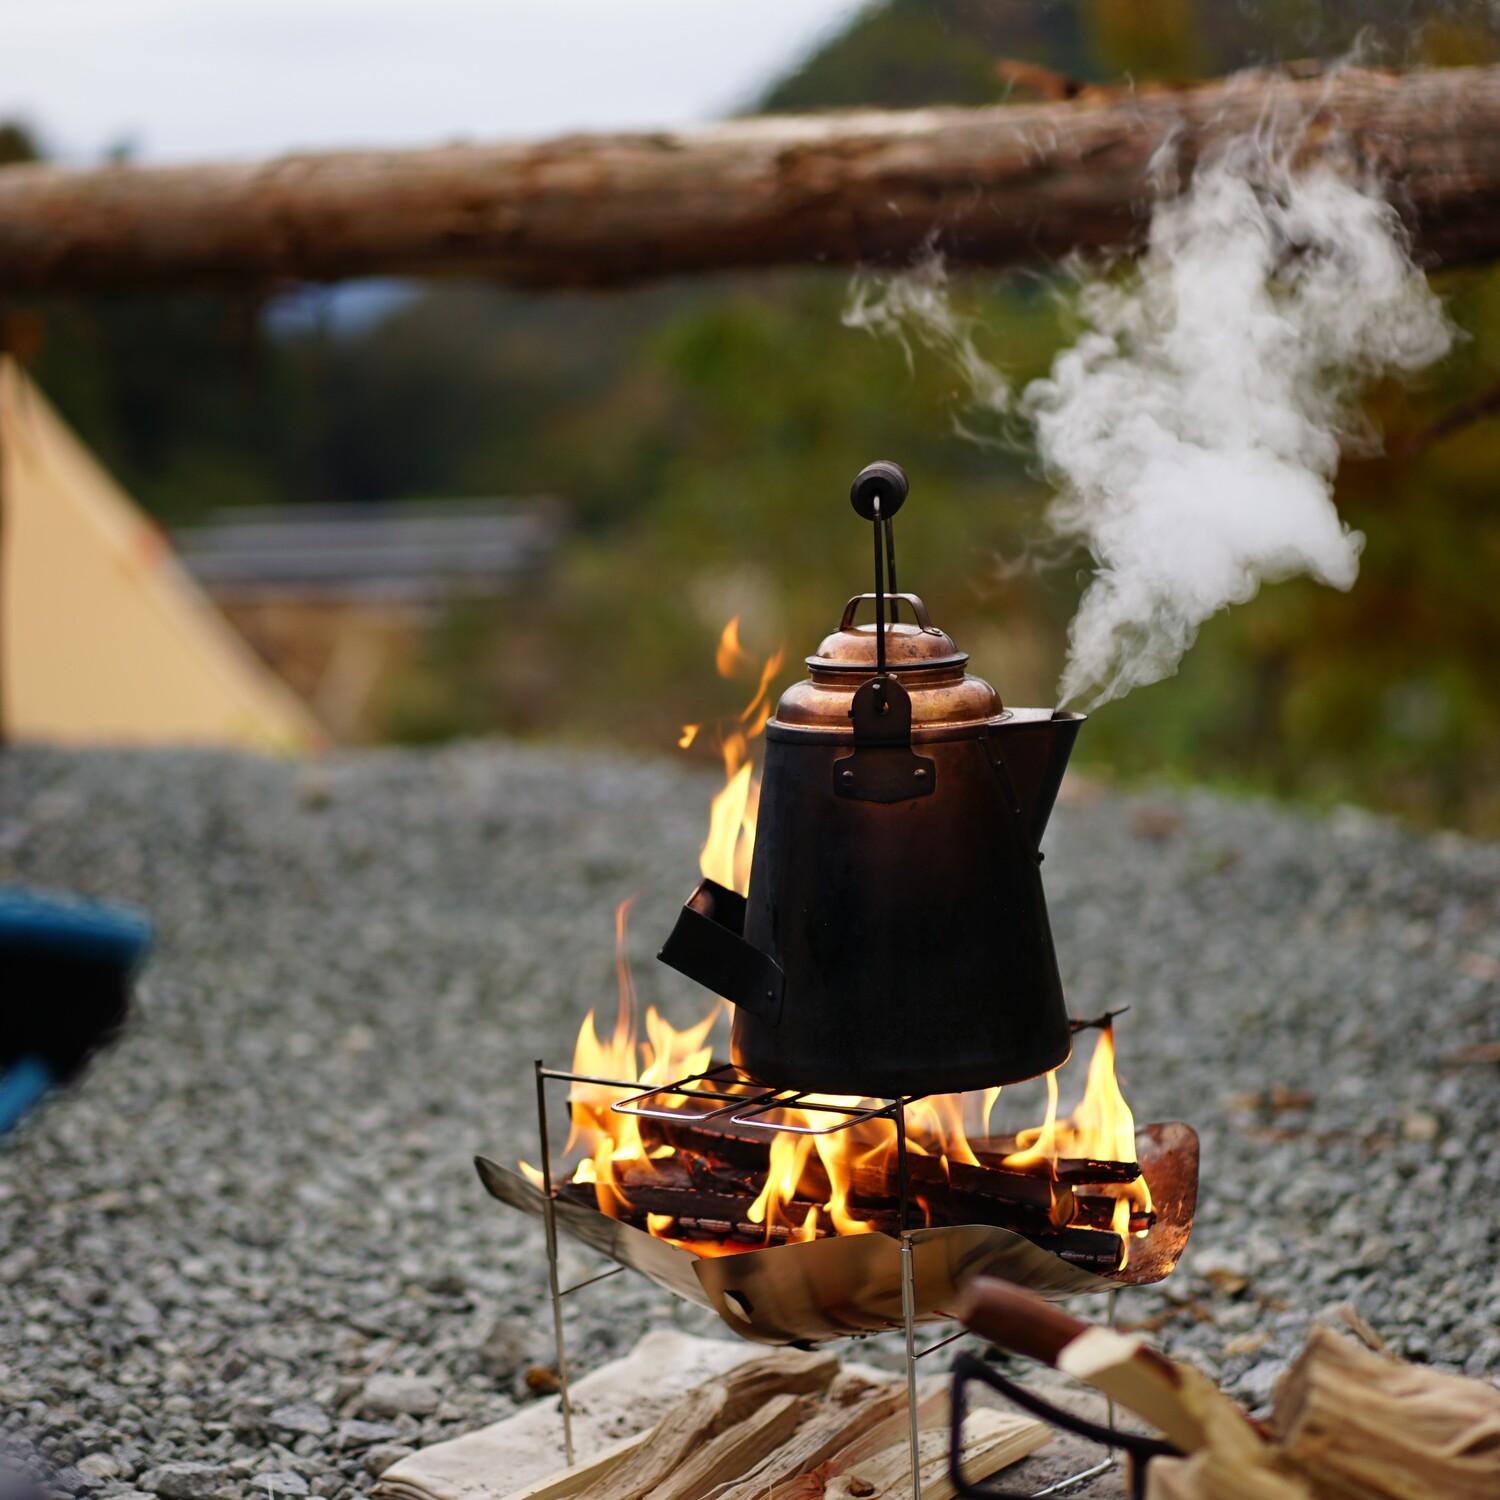 スイス発祥の焚き火台 ピコグリル 398 多くのキャンパーに愛される３つの魅力とは 焚き火道具 Be Pal キャンプ アウトドア 自然派生活の情報源ビーパル